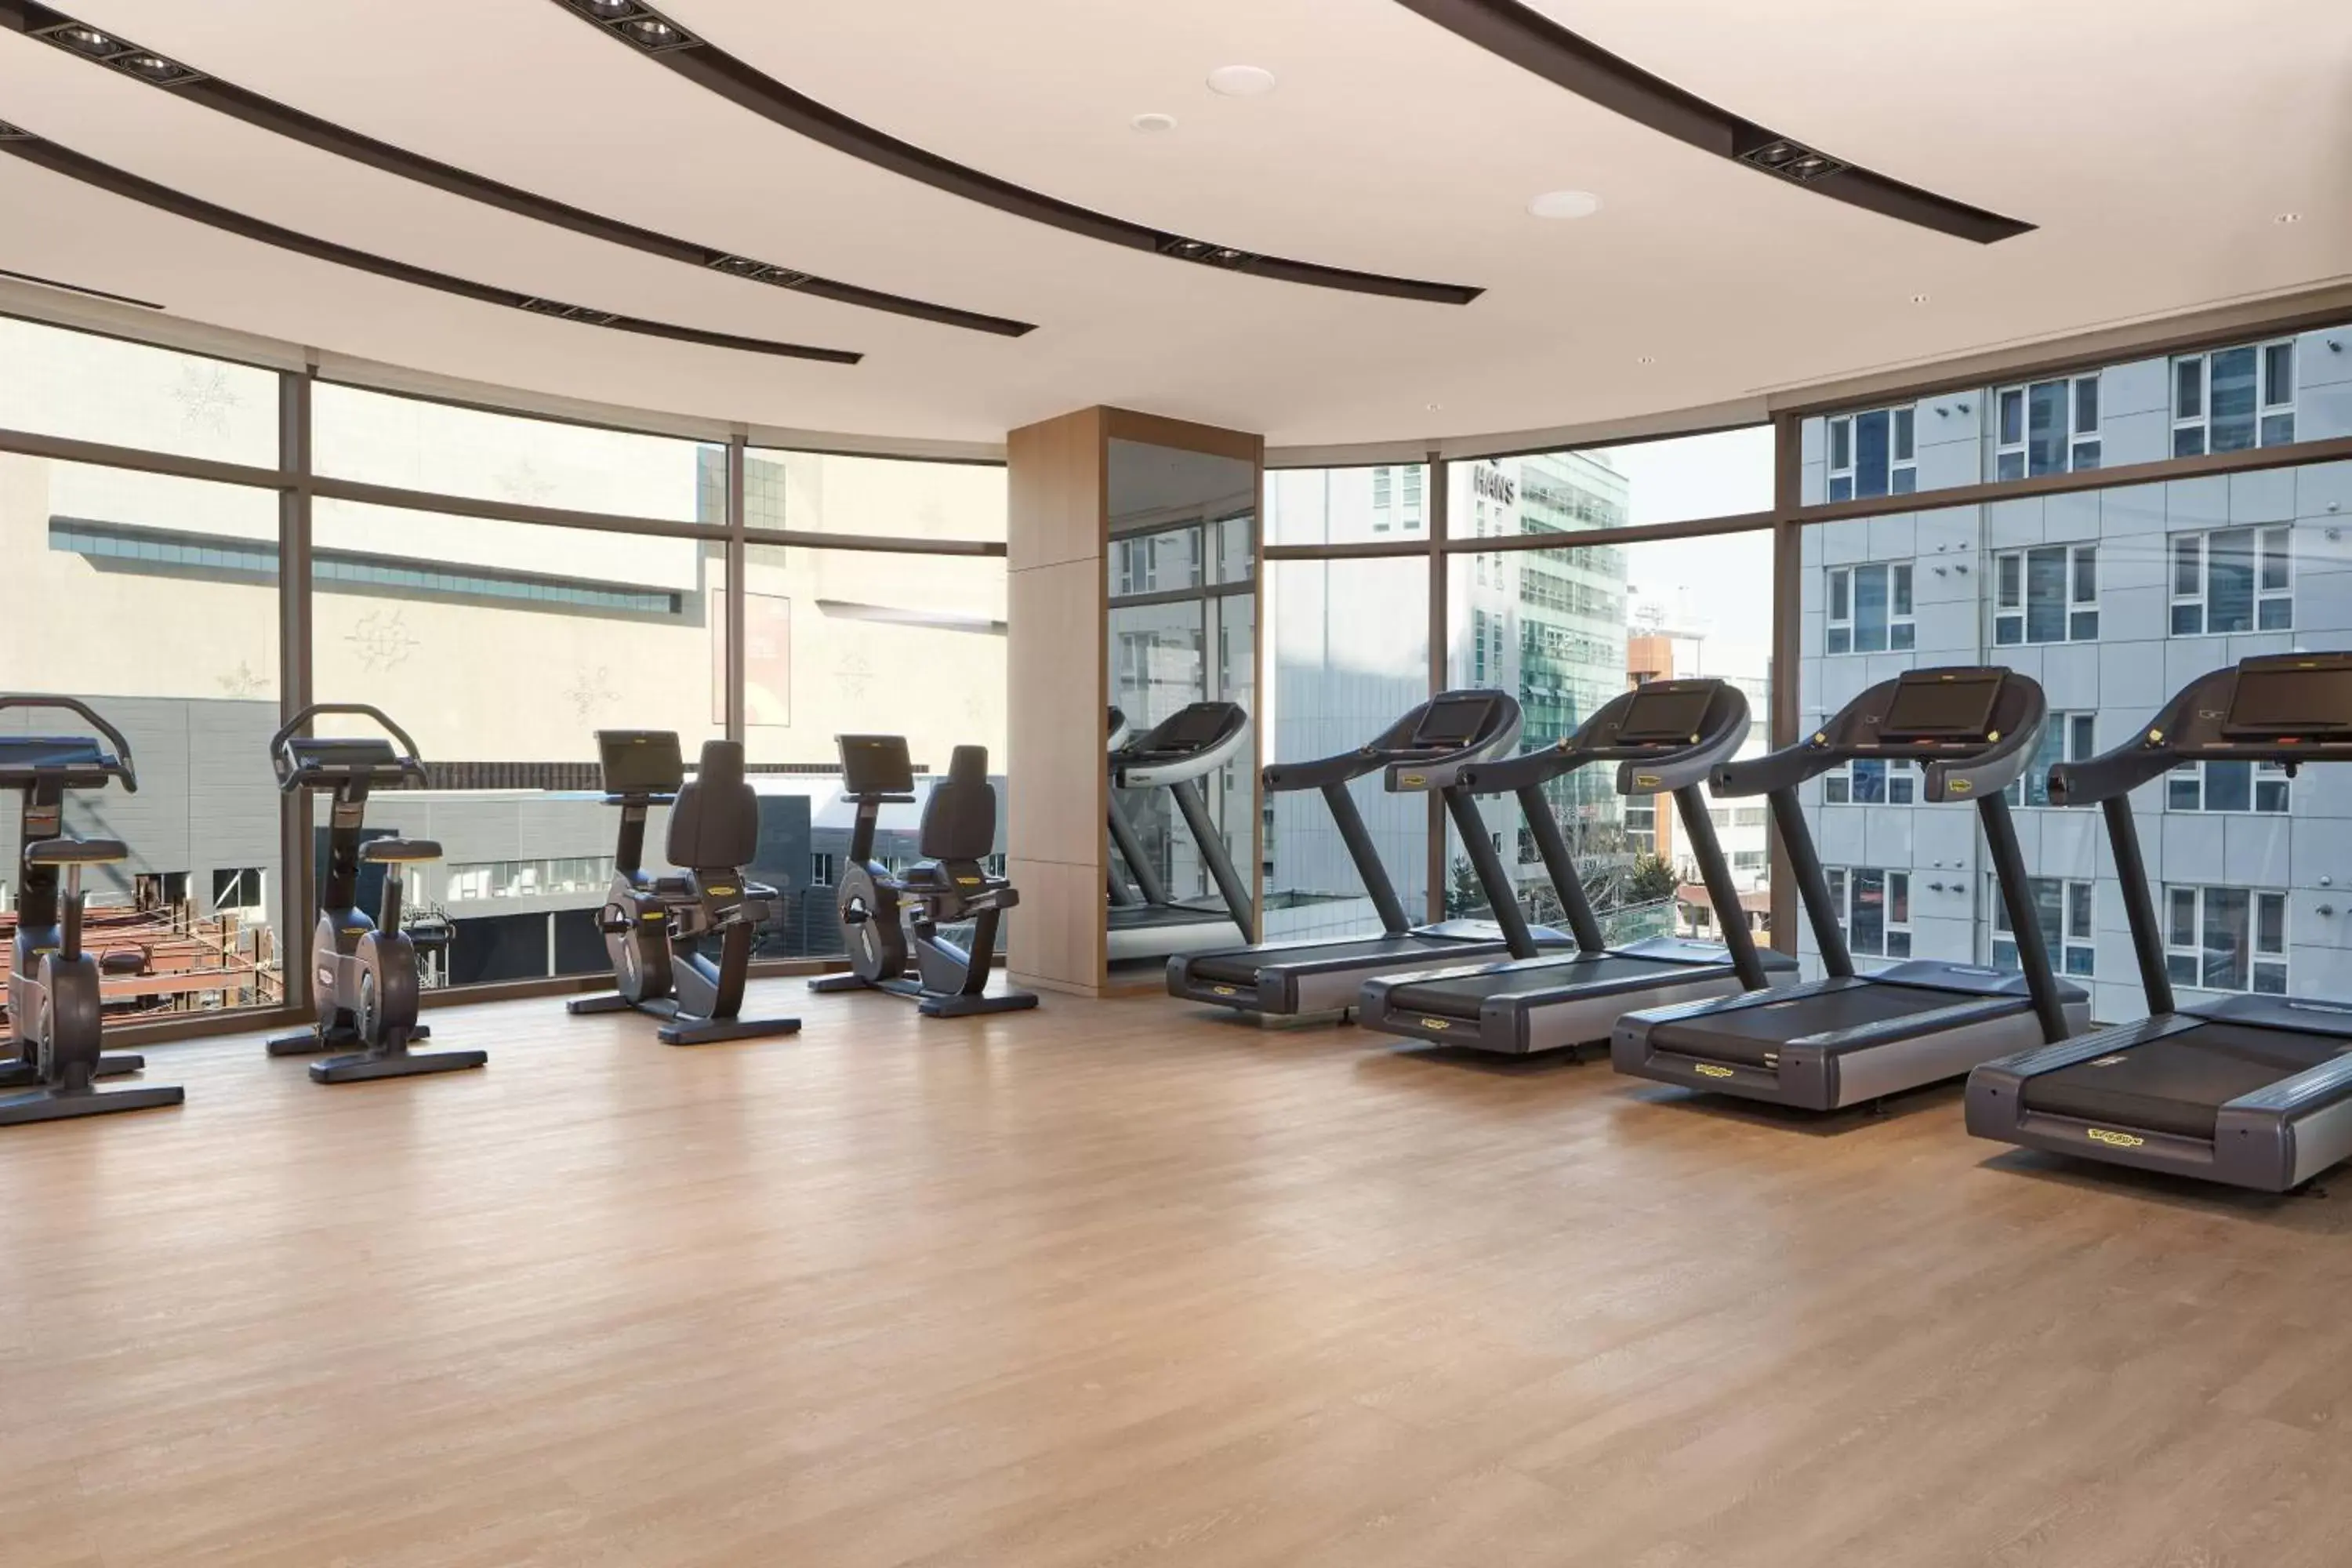 Fitness centre/facilities, Fitness Center/Facilities in Daegu Marriott Hotel